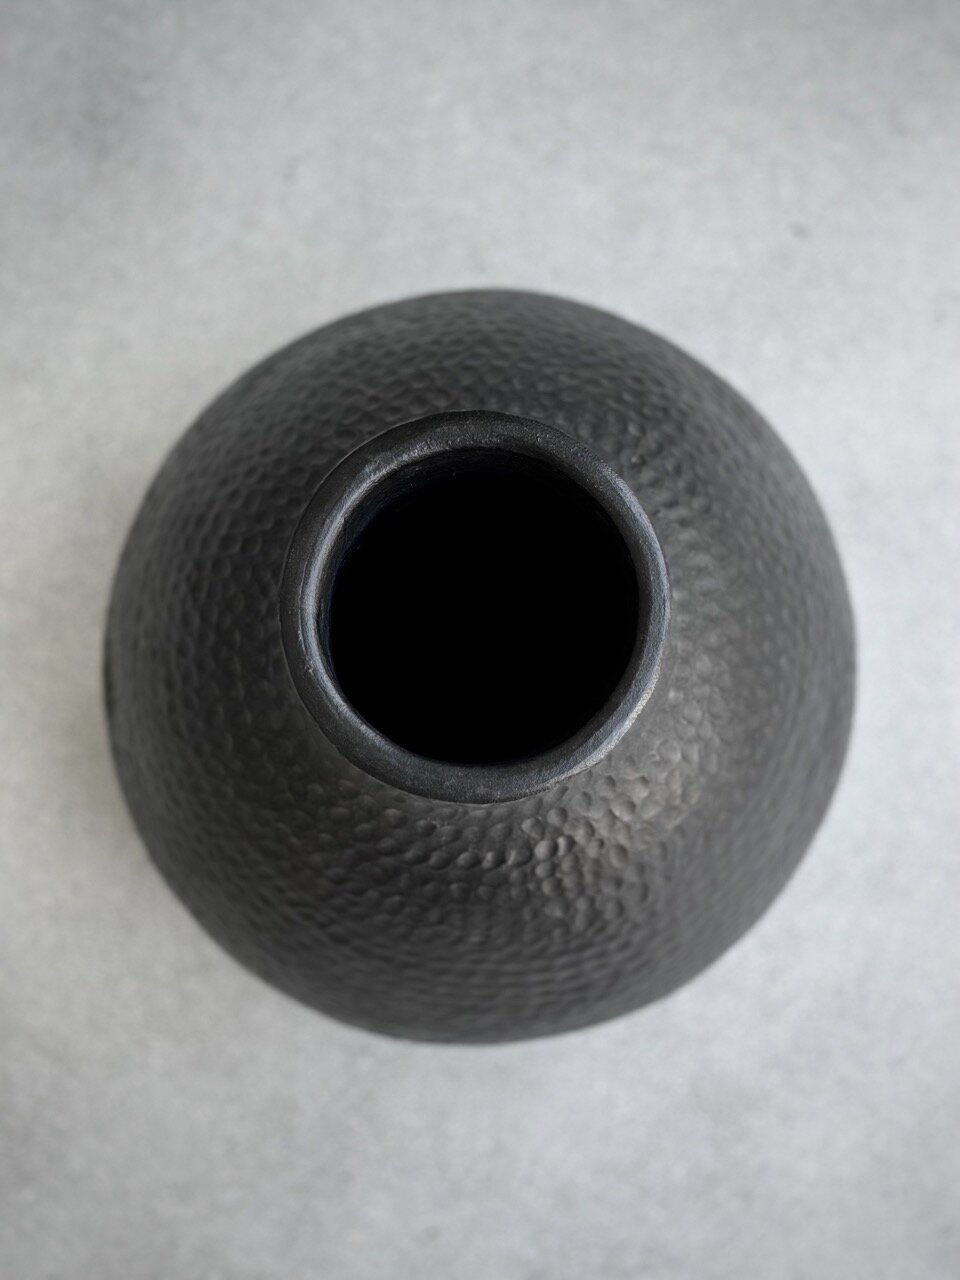 YAMA vase, black antique